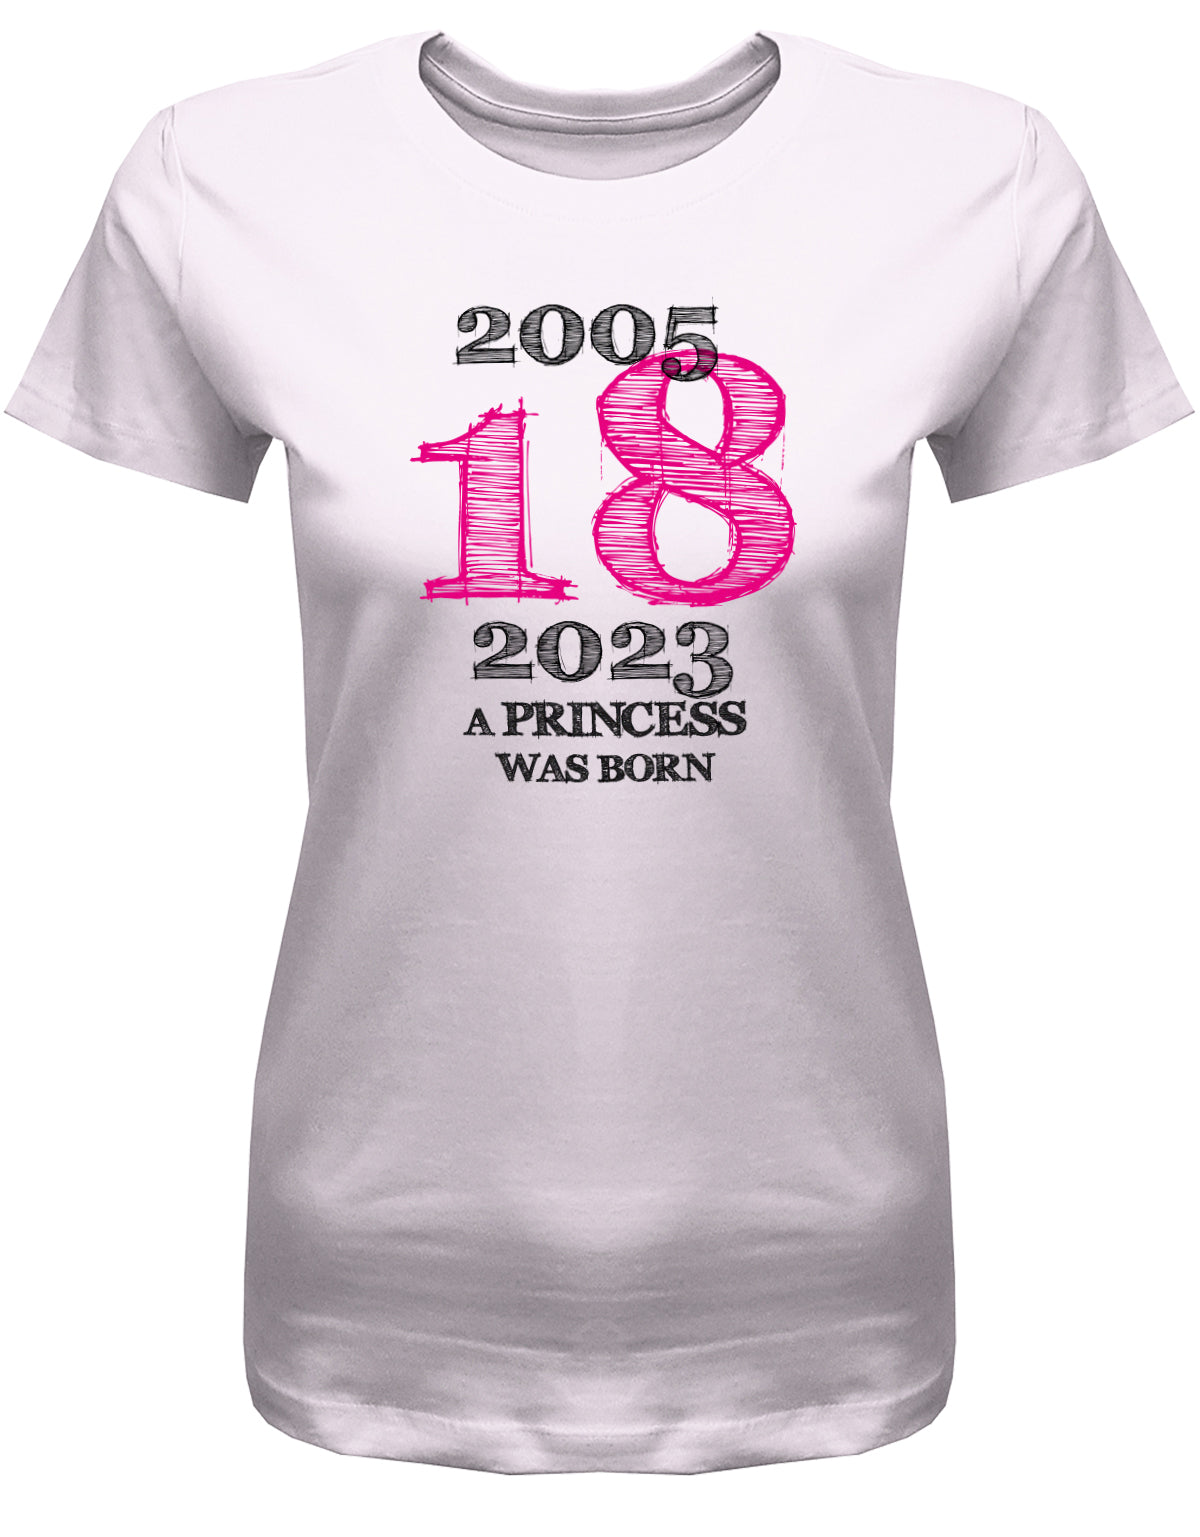 Cooles T-Shirt zum 18 Geburtstag für Mädchen Bedruckt mit: 2005 - 2023 18 a princess was born - Line Style Das T Shirt 10 Geburtstag Mädchen Lustig ist eine super Geschenkidee für alle 18 Jährigen. Man wird nur einmal volljährig. Geschenk zum 18 geburtstag Frau ✓ 2005 geburtstag Frau ✓ 18 Geburtstag tshirt ✓ shirt geburtstag 18 Rosa